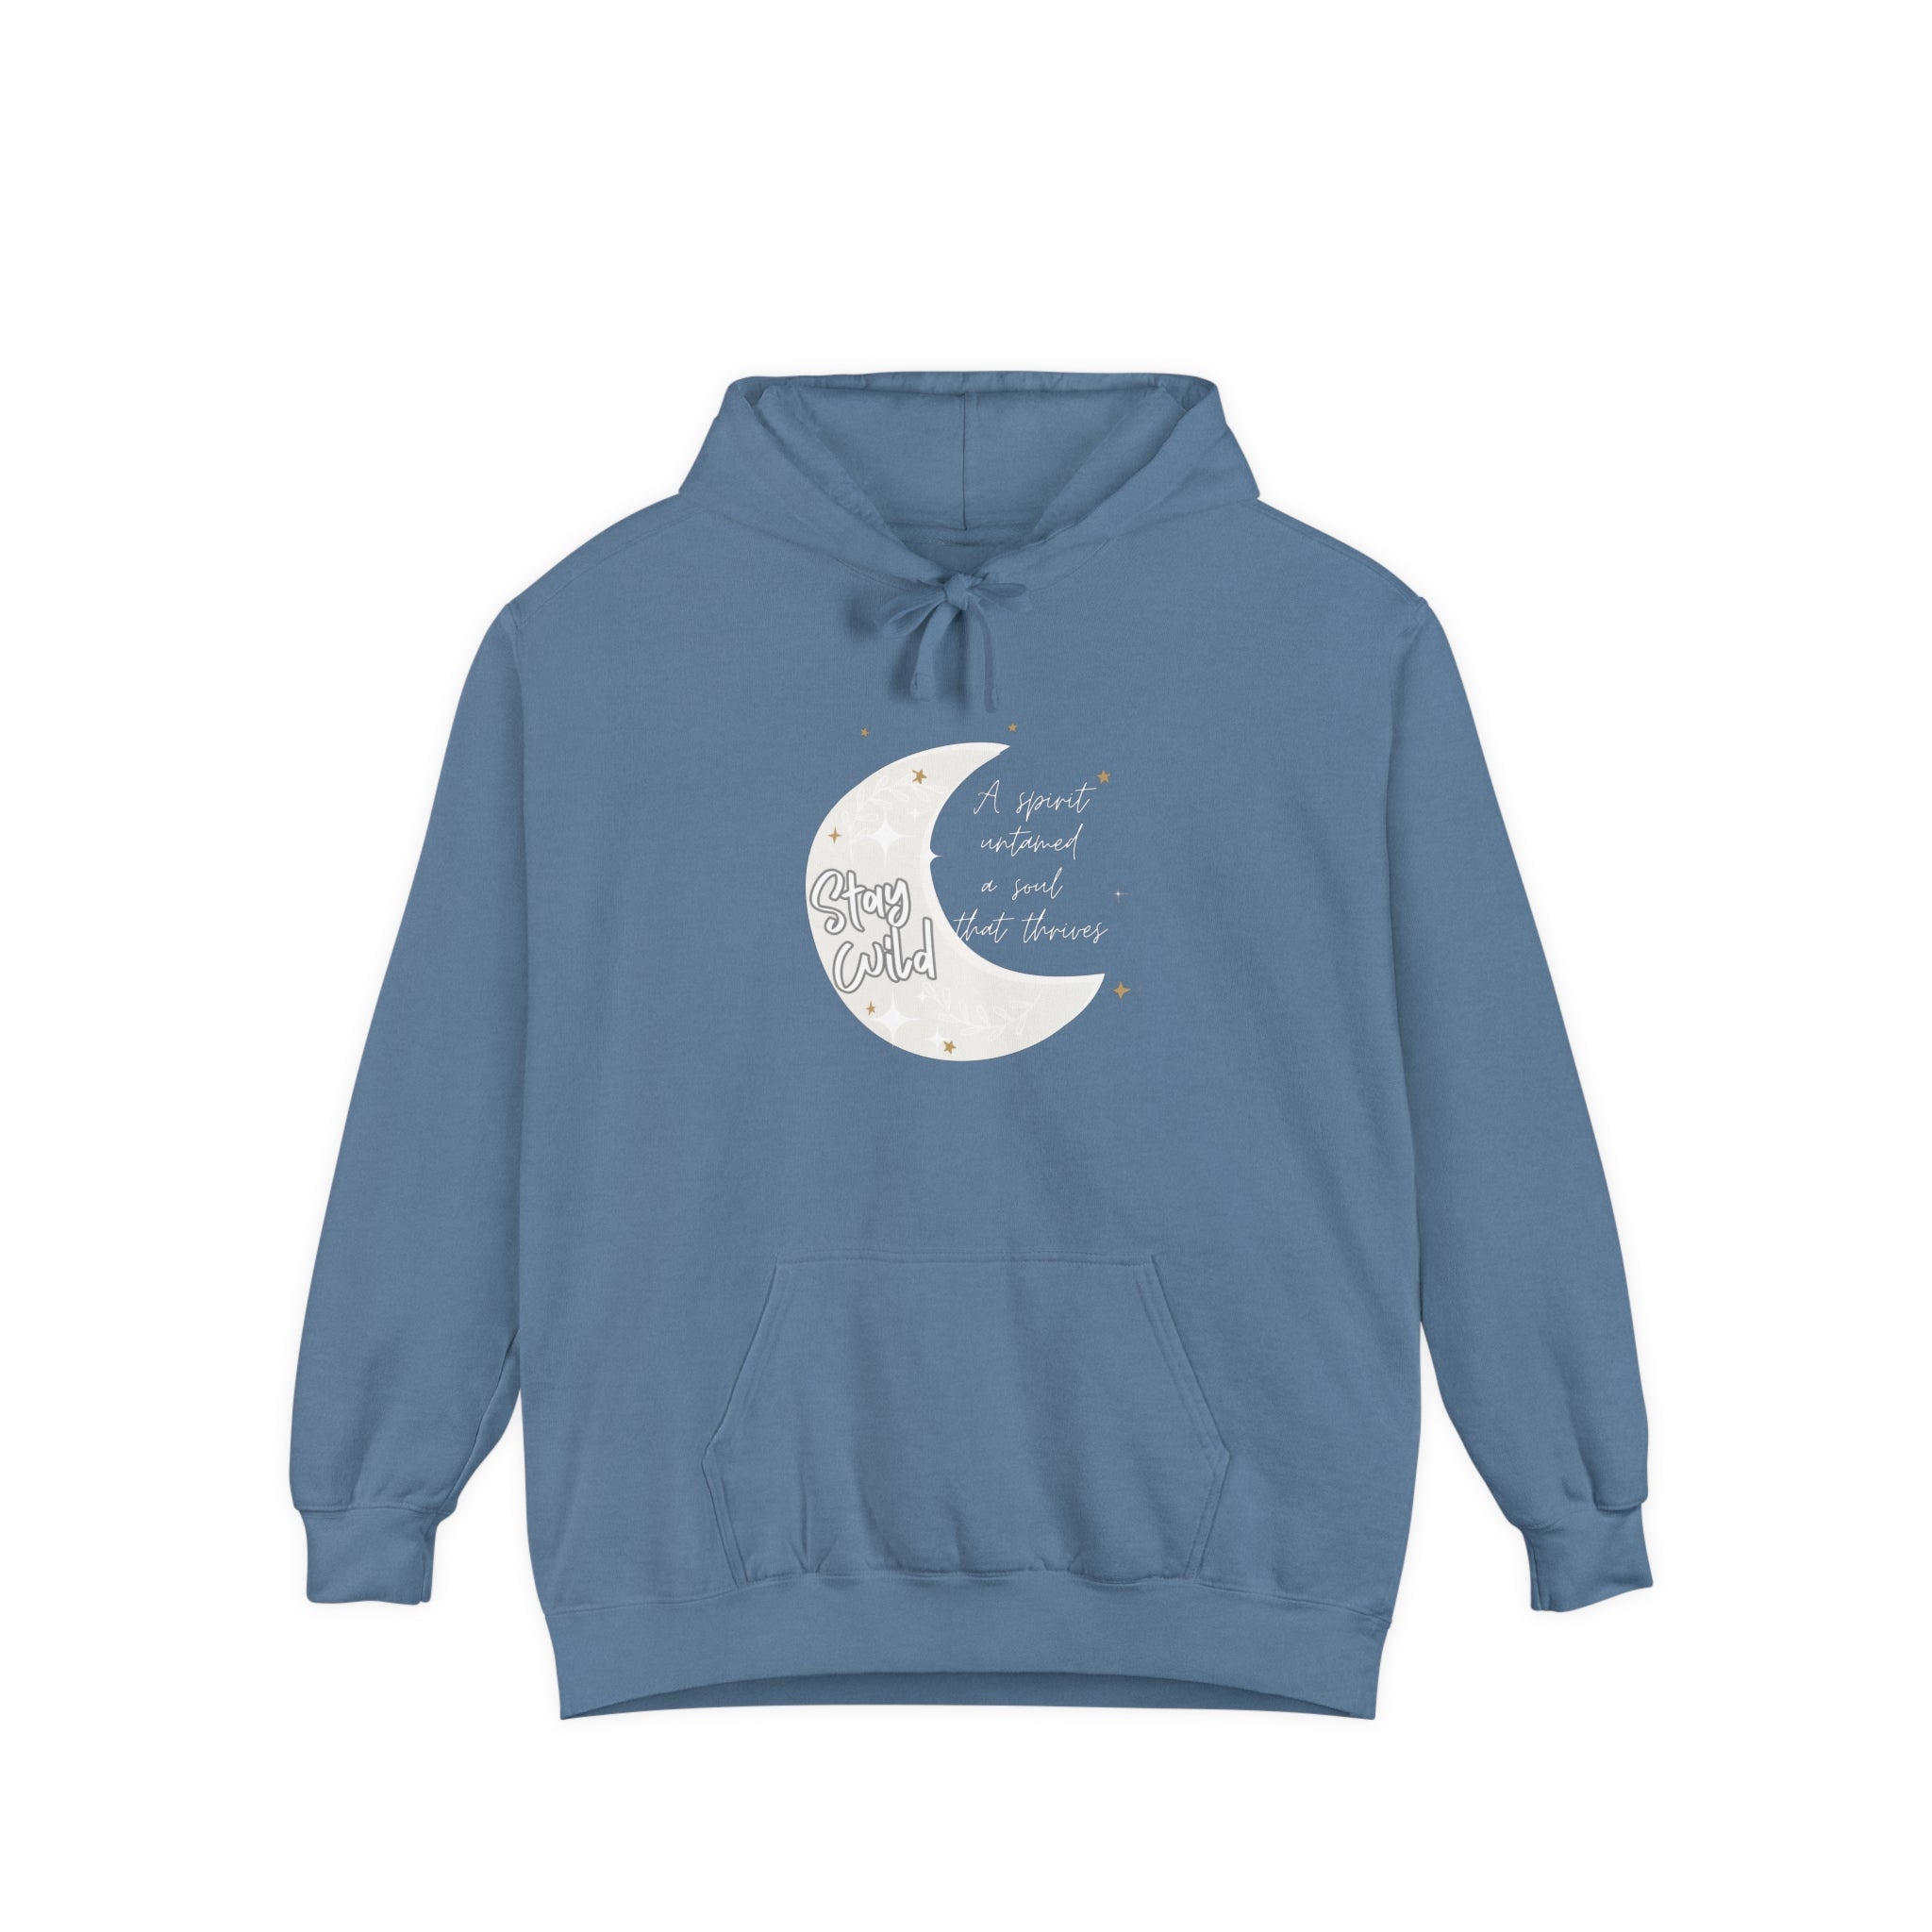 Printify Hoodie Blue Jean / S Spirit Thrives - Unisex Garment-Dyed Hoodie